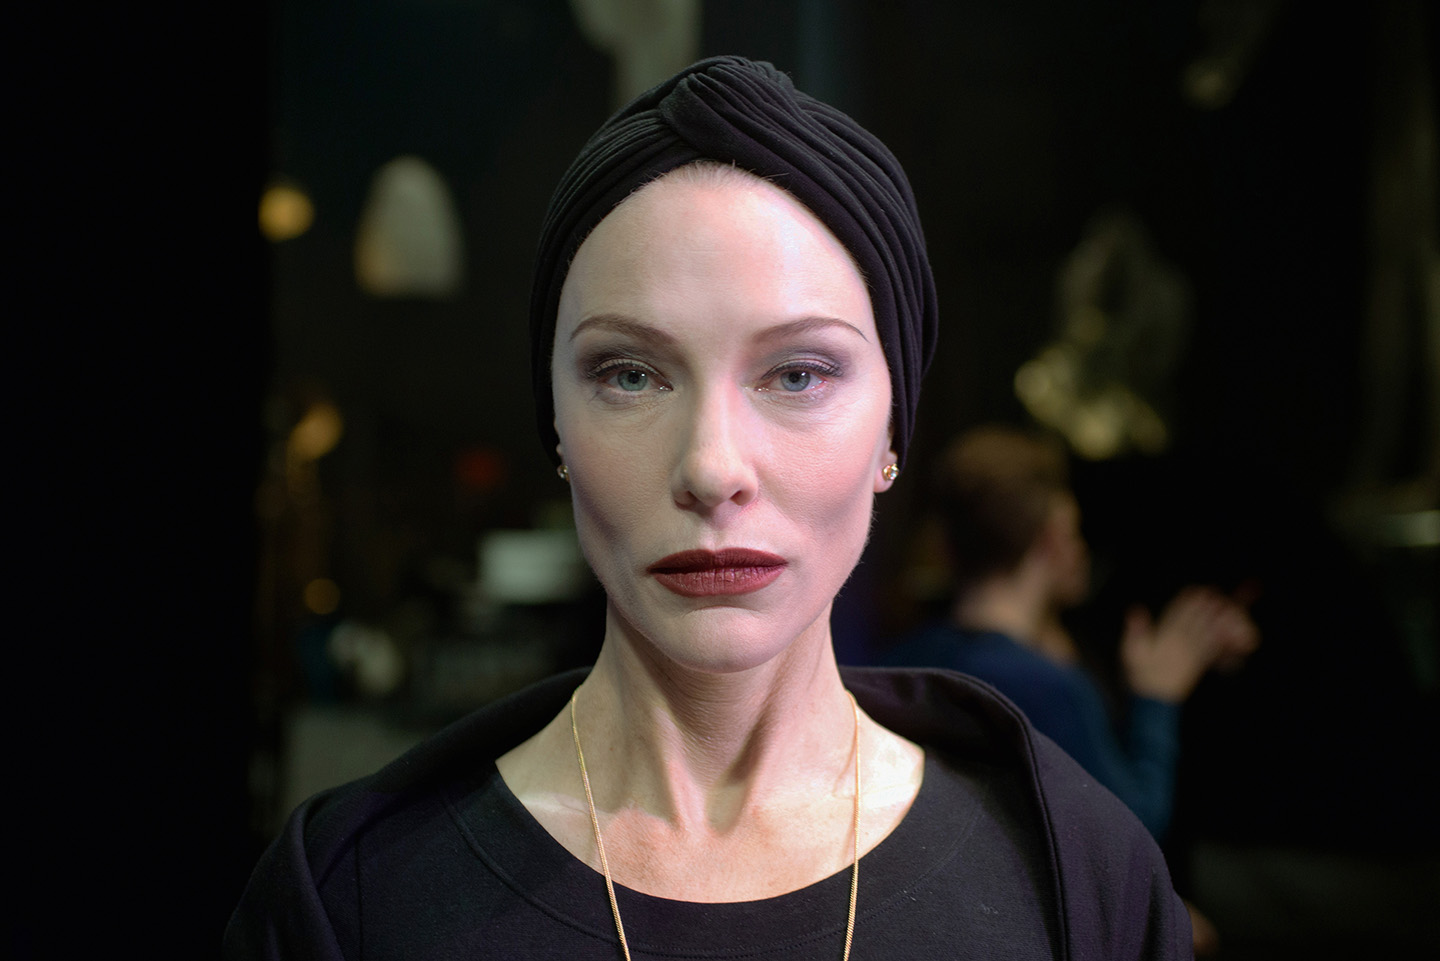 Manifesto, arriva in sala il film con Cate Blanchett